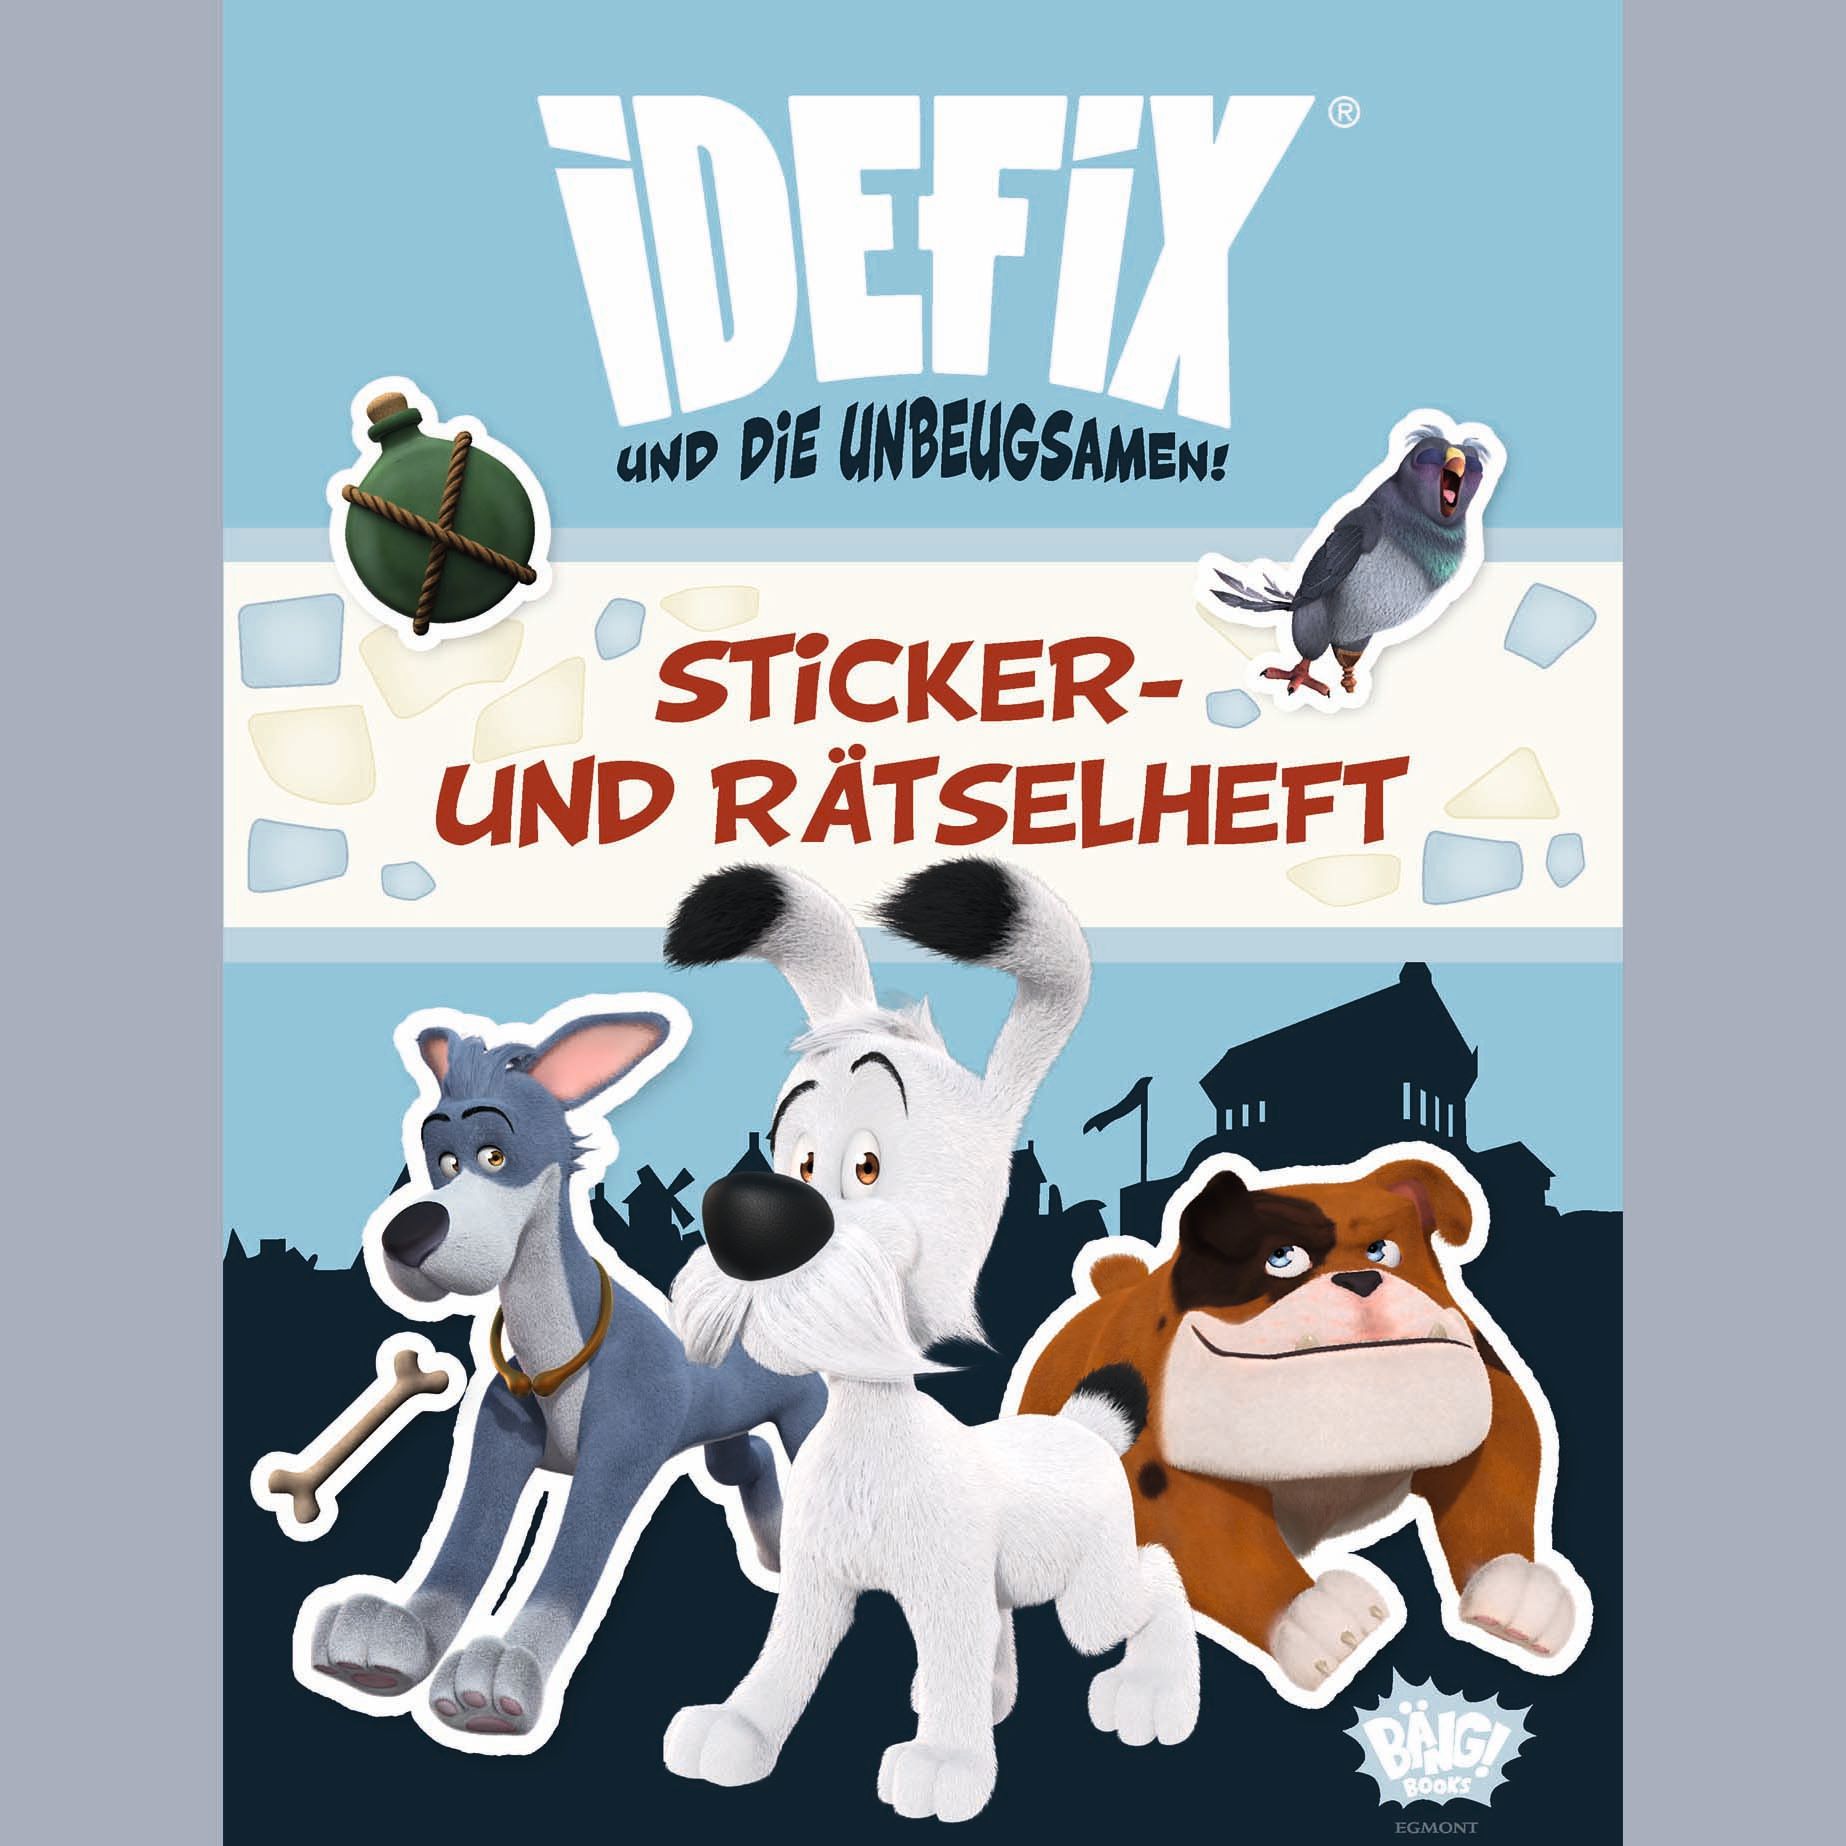 Egmont BÄNG! Books bringt Sticker- und Rätselspaß mit Idefix!